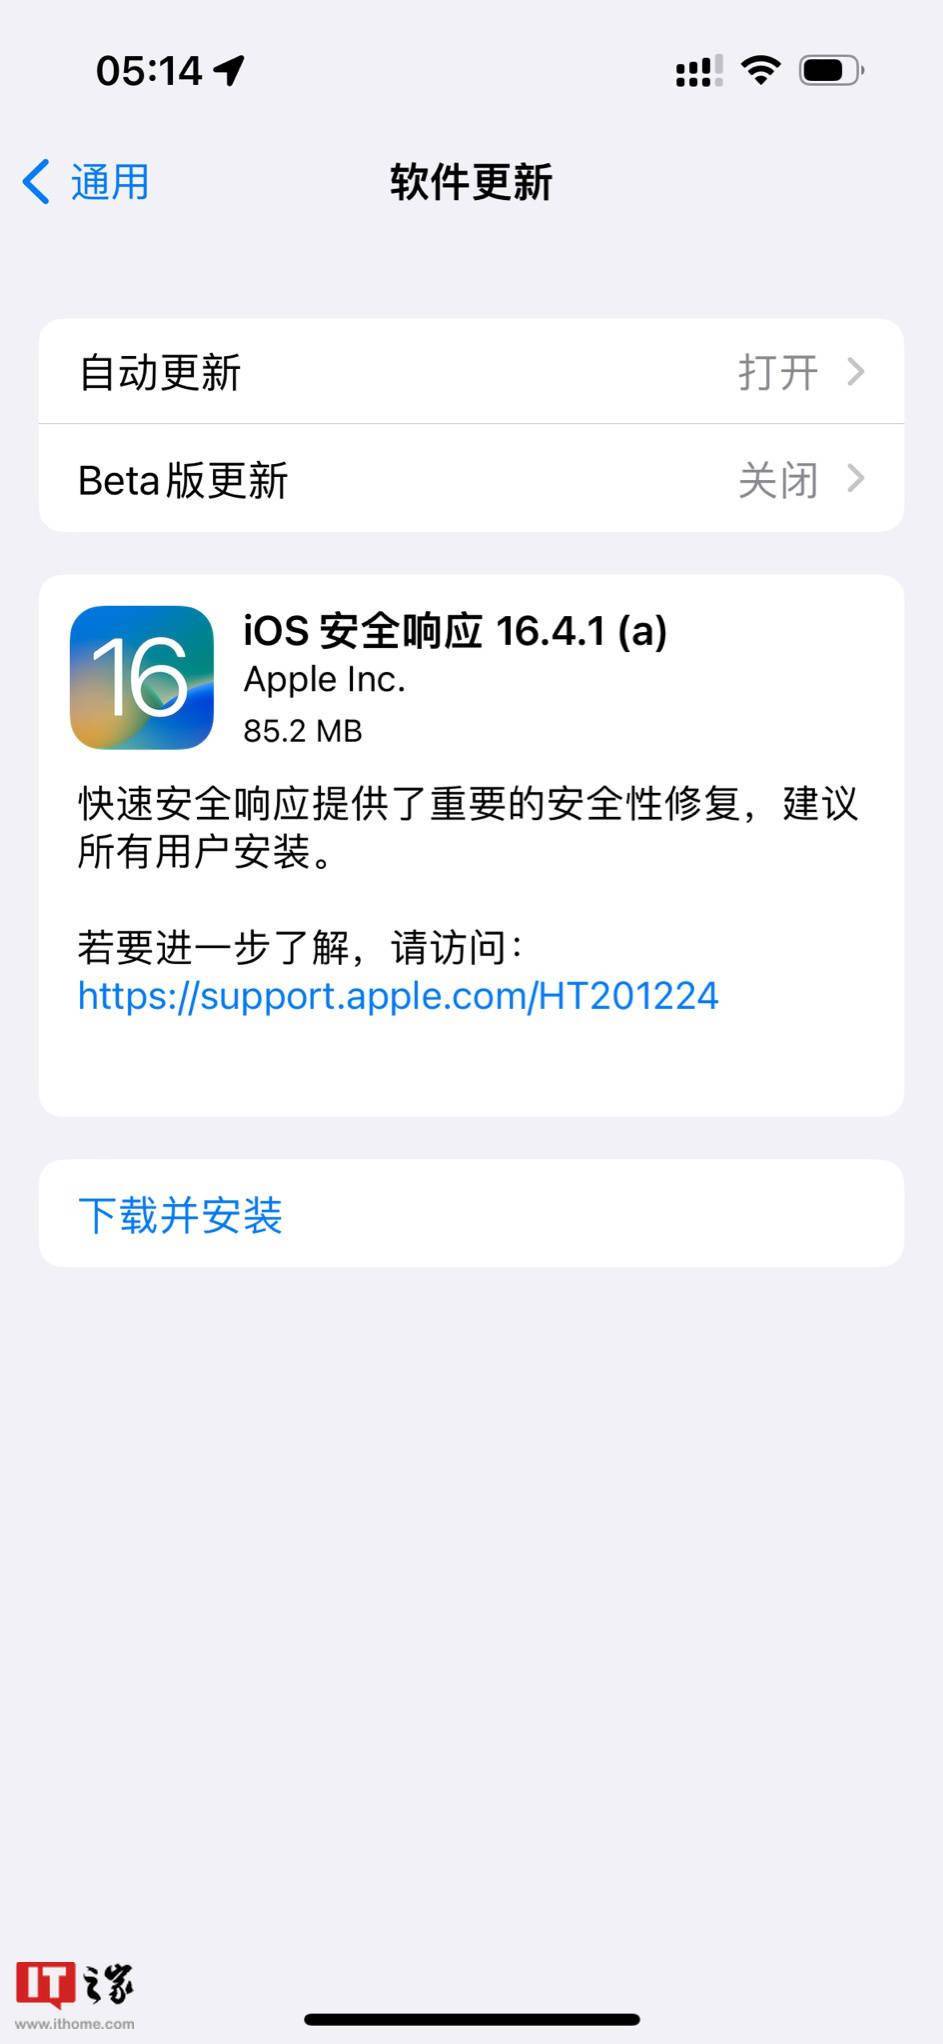 苹果发布iOS 16.4.1/macOS 13.3.1快速安全响应更新 为用户提供安全修复